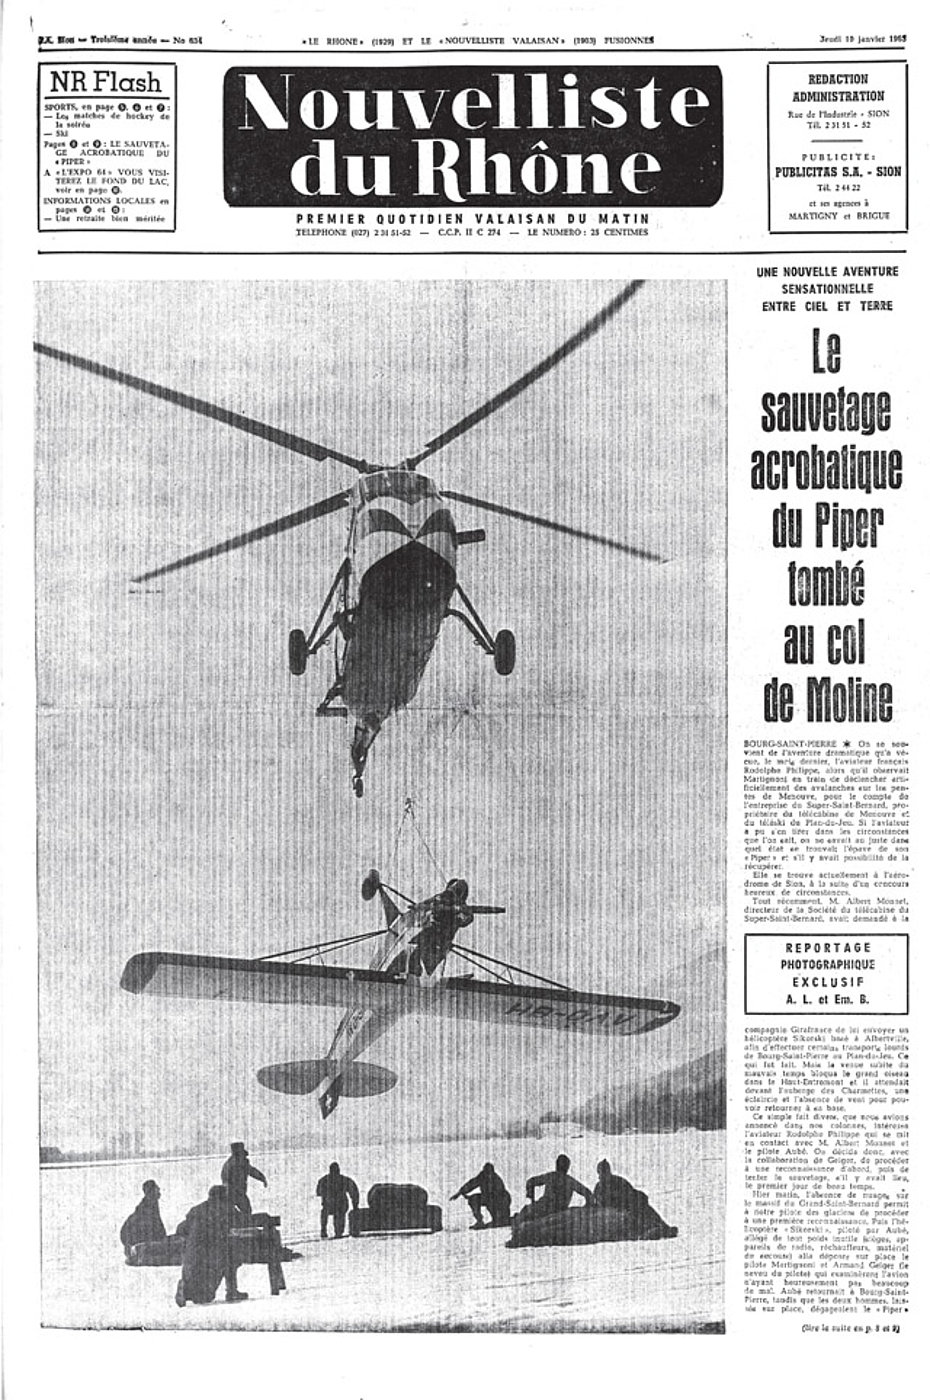 La copertina del quotidiano vallesano "Nouvelliste du Rhône" del 15 gennaio 1963 mostra l'S-58C F-OBON mentre si appresta a depositare all'aeroporto di Sion il Piper recuperato al Col de Moline